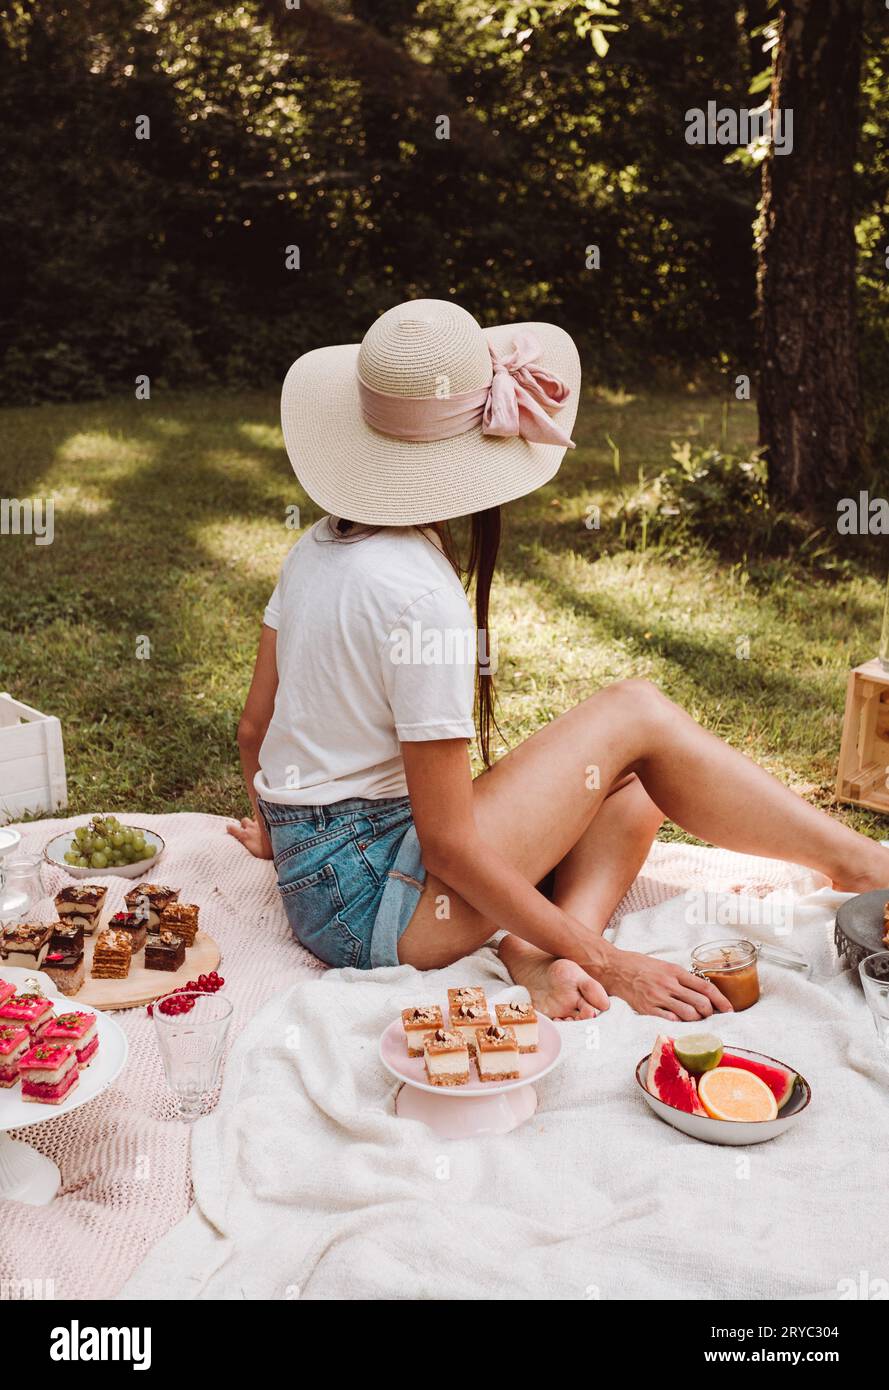 Porträtfoto einer Frau, die auf der Decke mit Kuchen, Süßigkeiten und anderen Speisen in der Natur sitzt - Picknick-Stil. Lifestyle-Bild – weibliches Modell mit Strohhalm Stockfoto